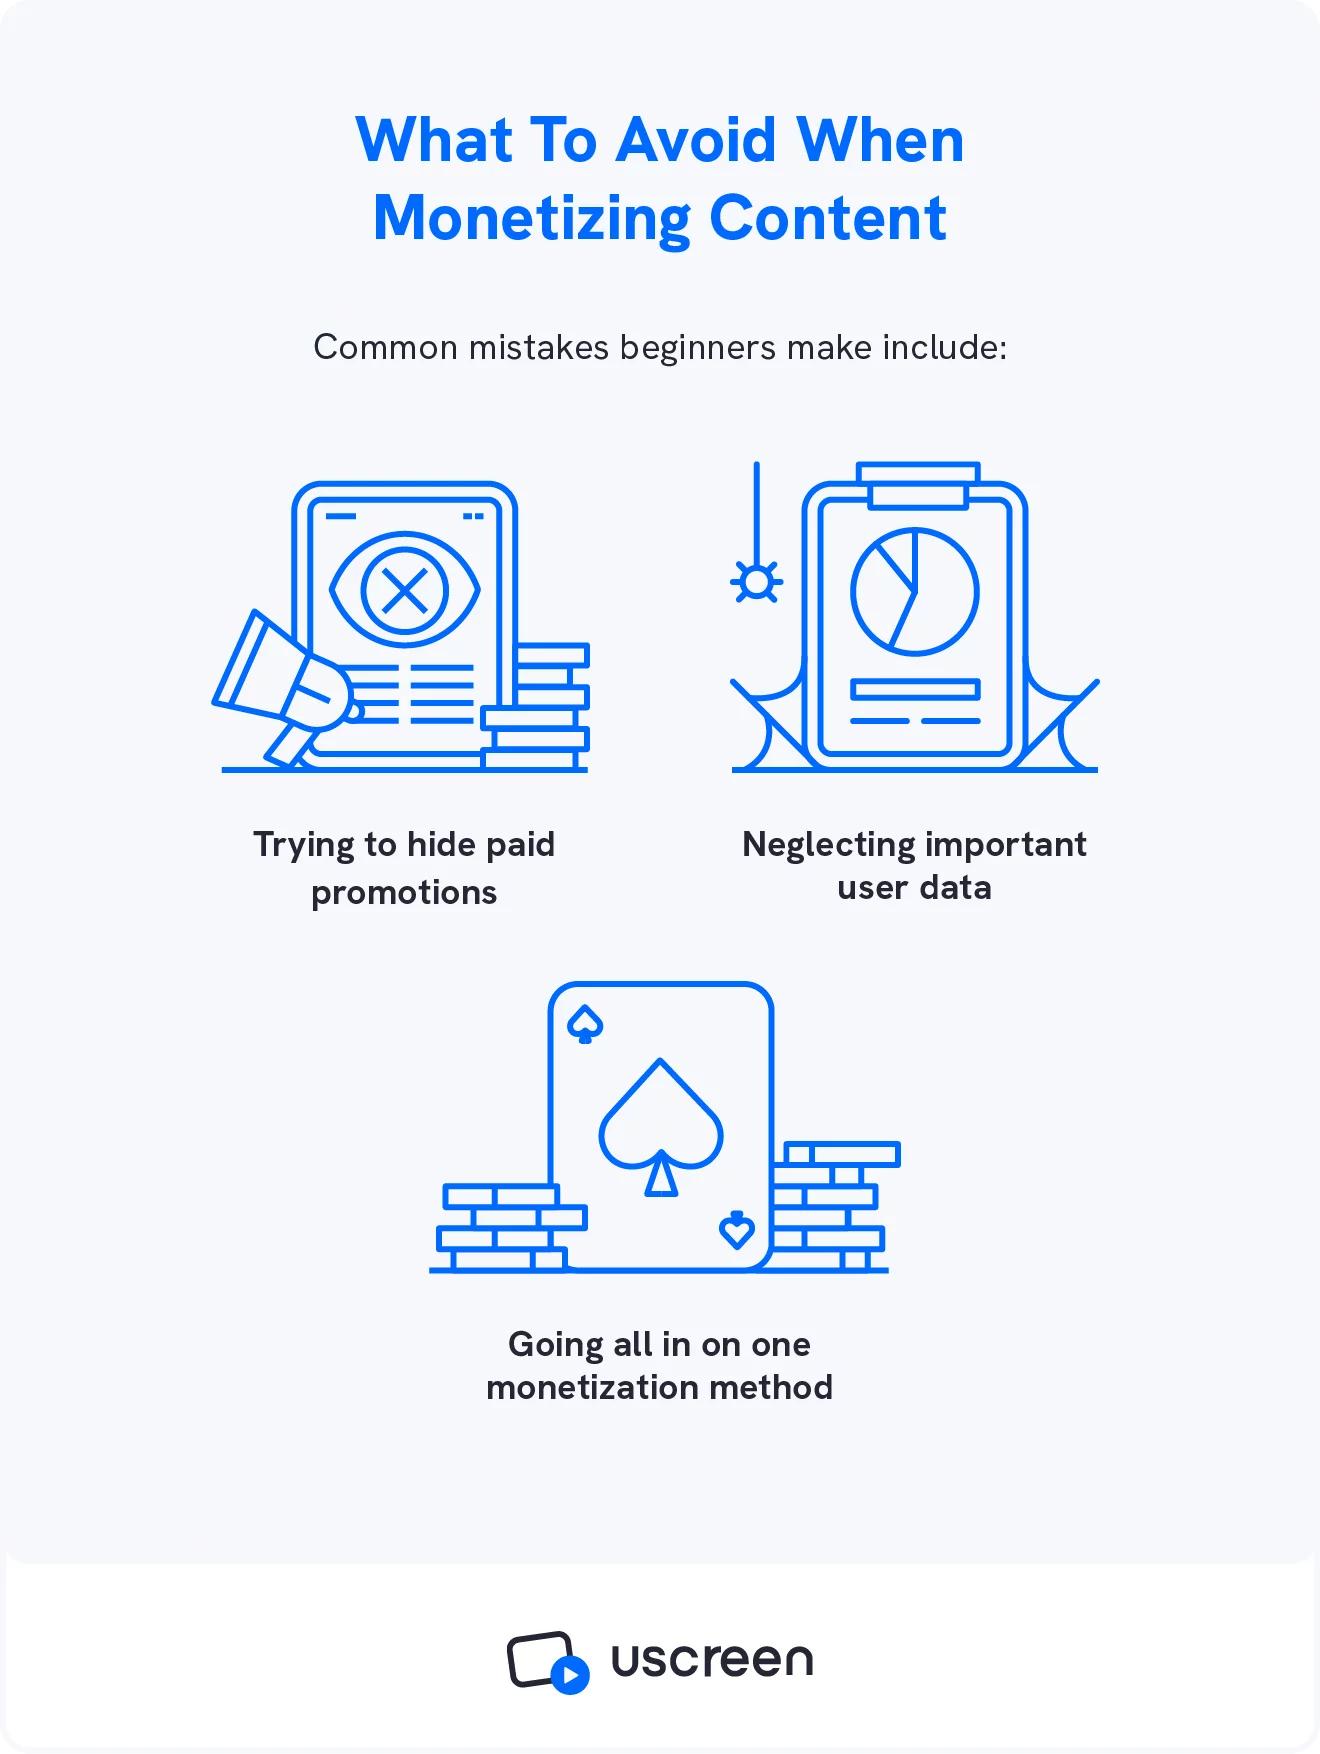 Sebuah gambar menampilkan 3 kesalahan monetisasi konten utama yang dilakukan pembuat video saat pertama kali memulai.